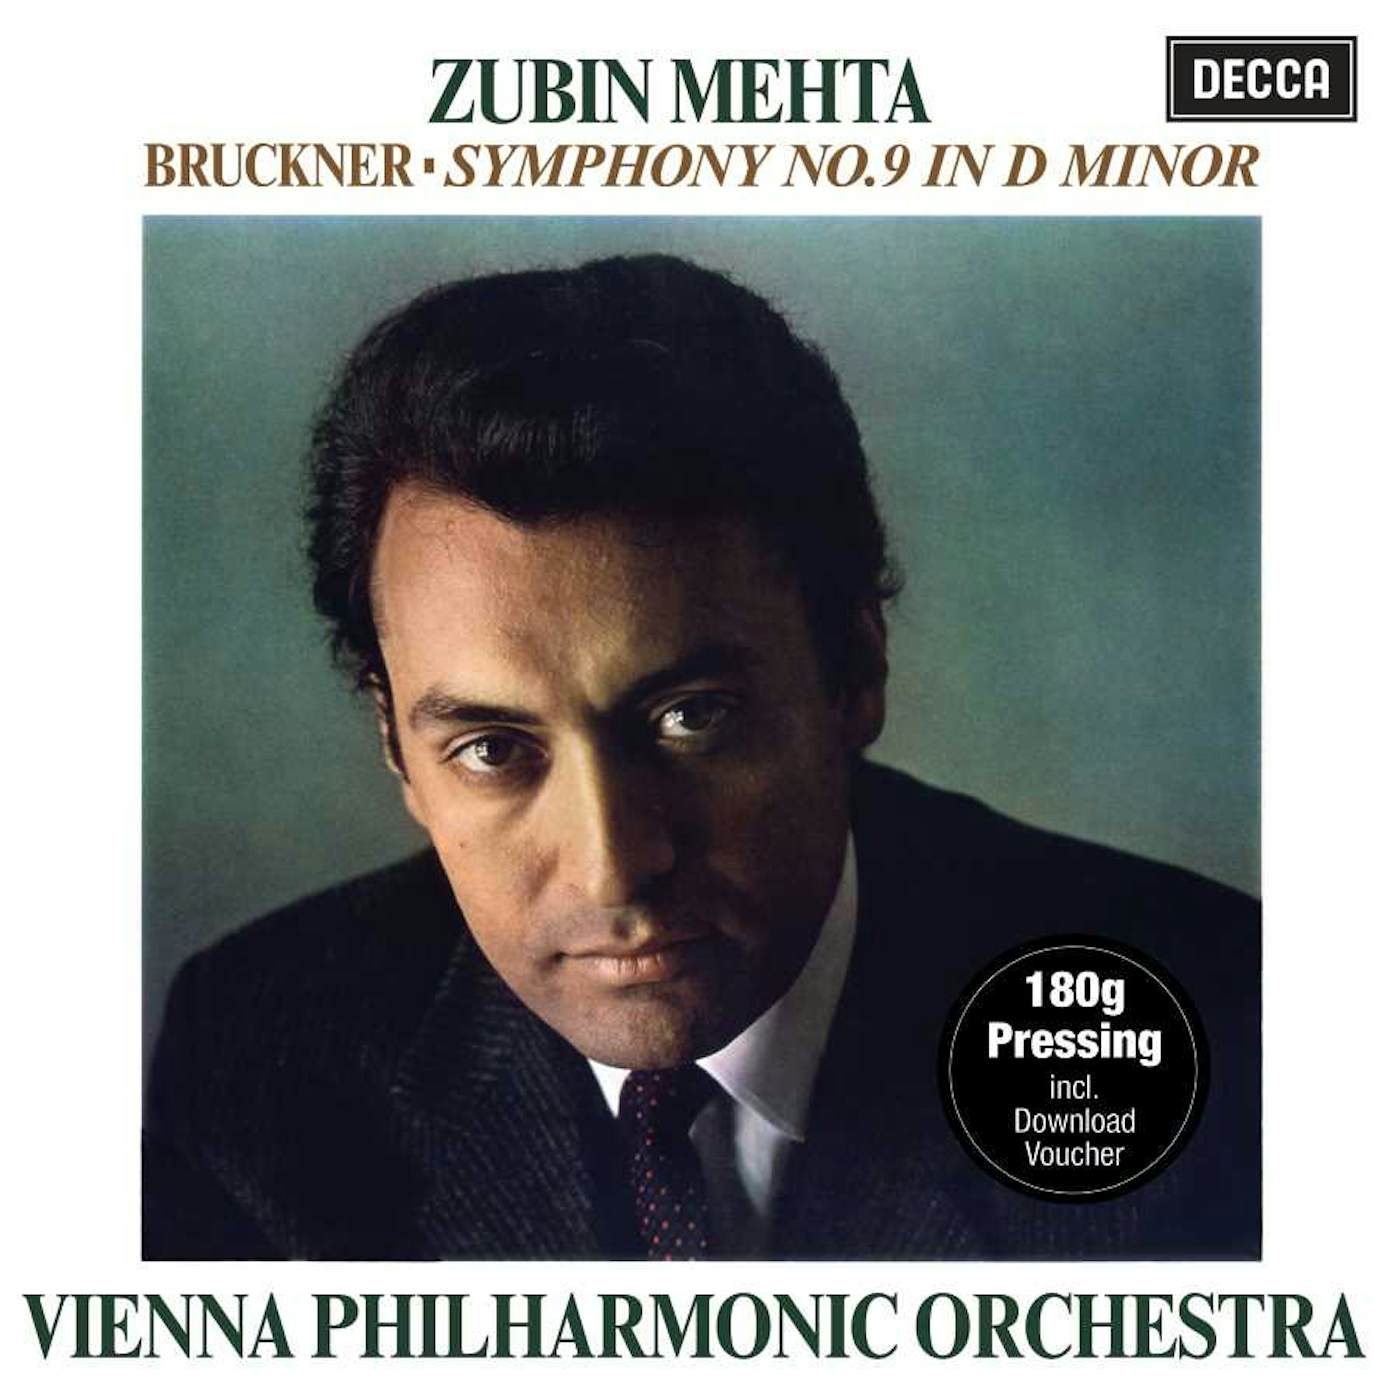 Zubin Mehta Bruckner: Symphony No. 9 In D Minor Vinyl Record